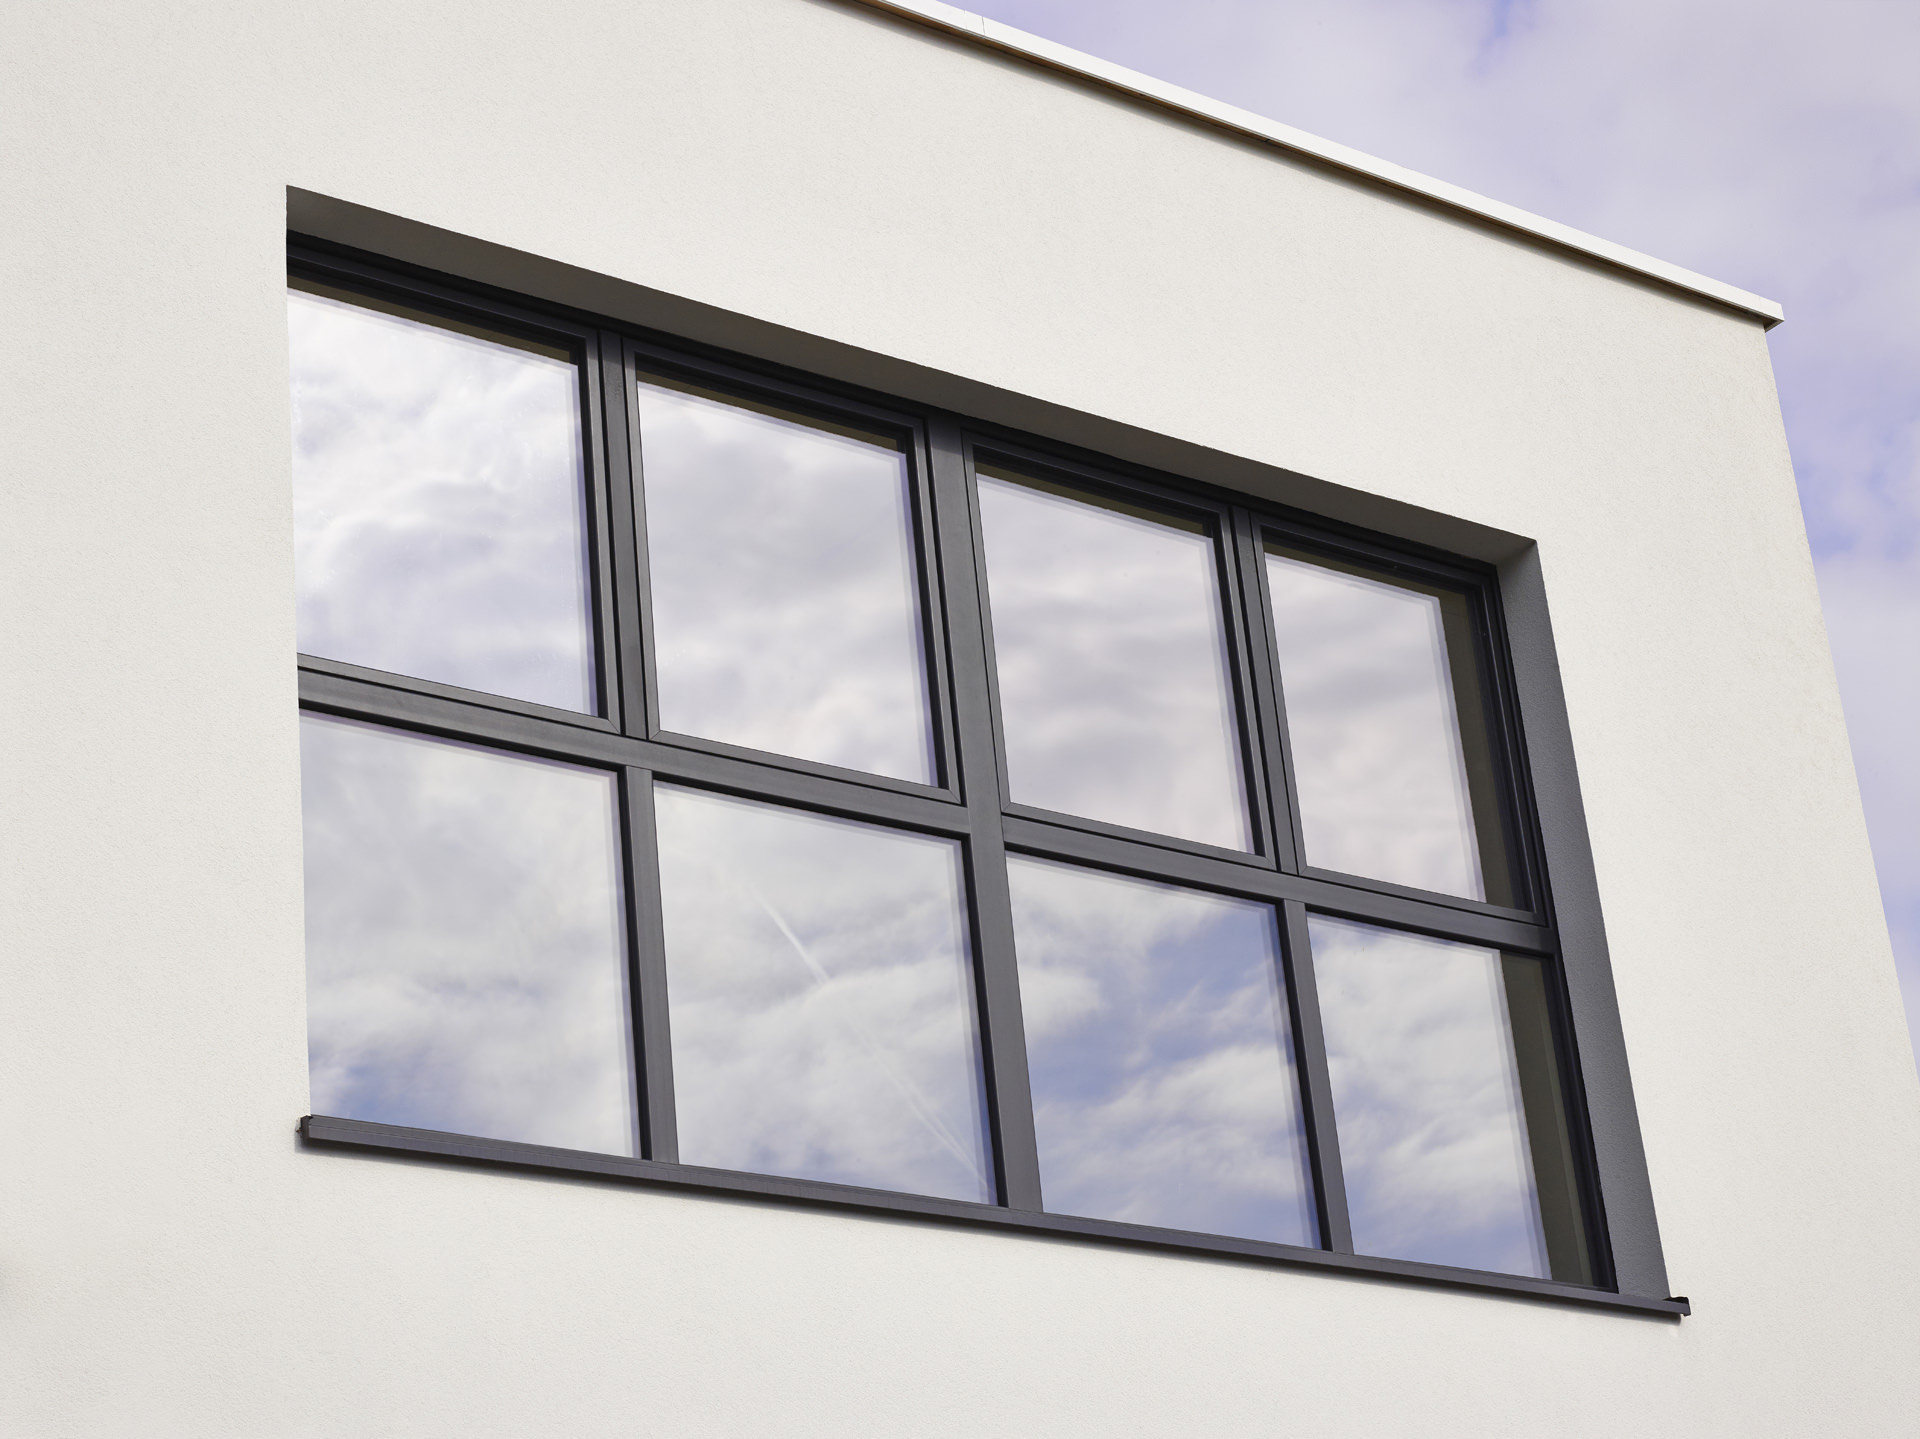 How Sustainable Are Aluminium Windows?